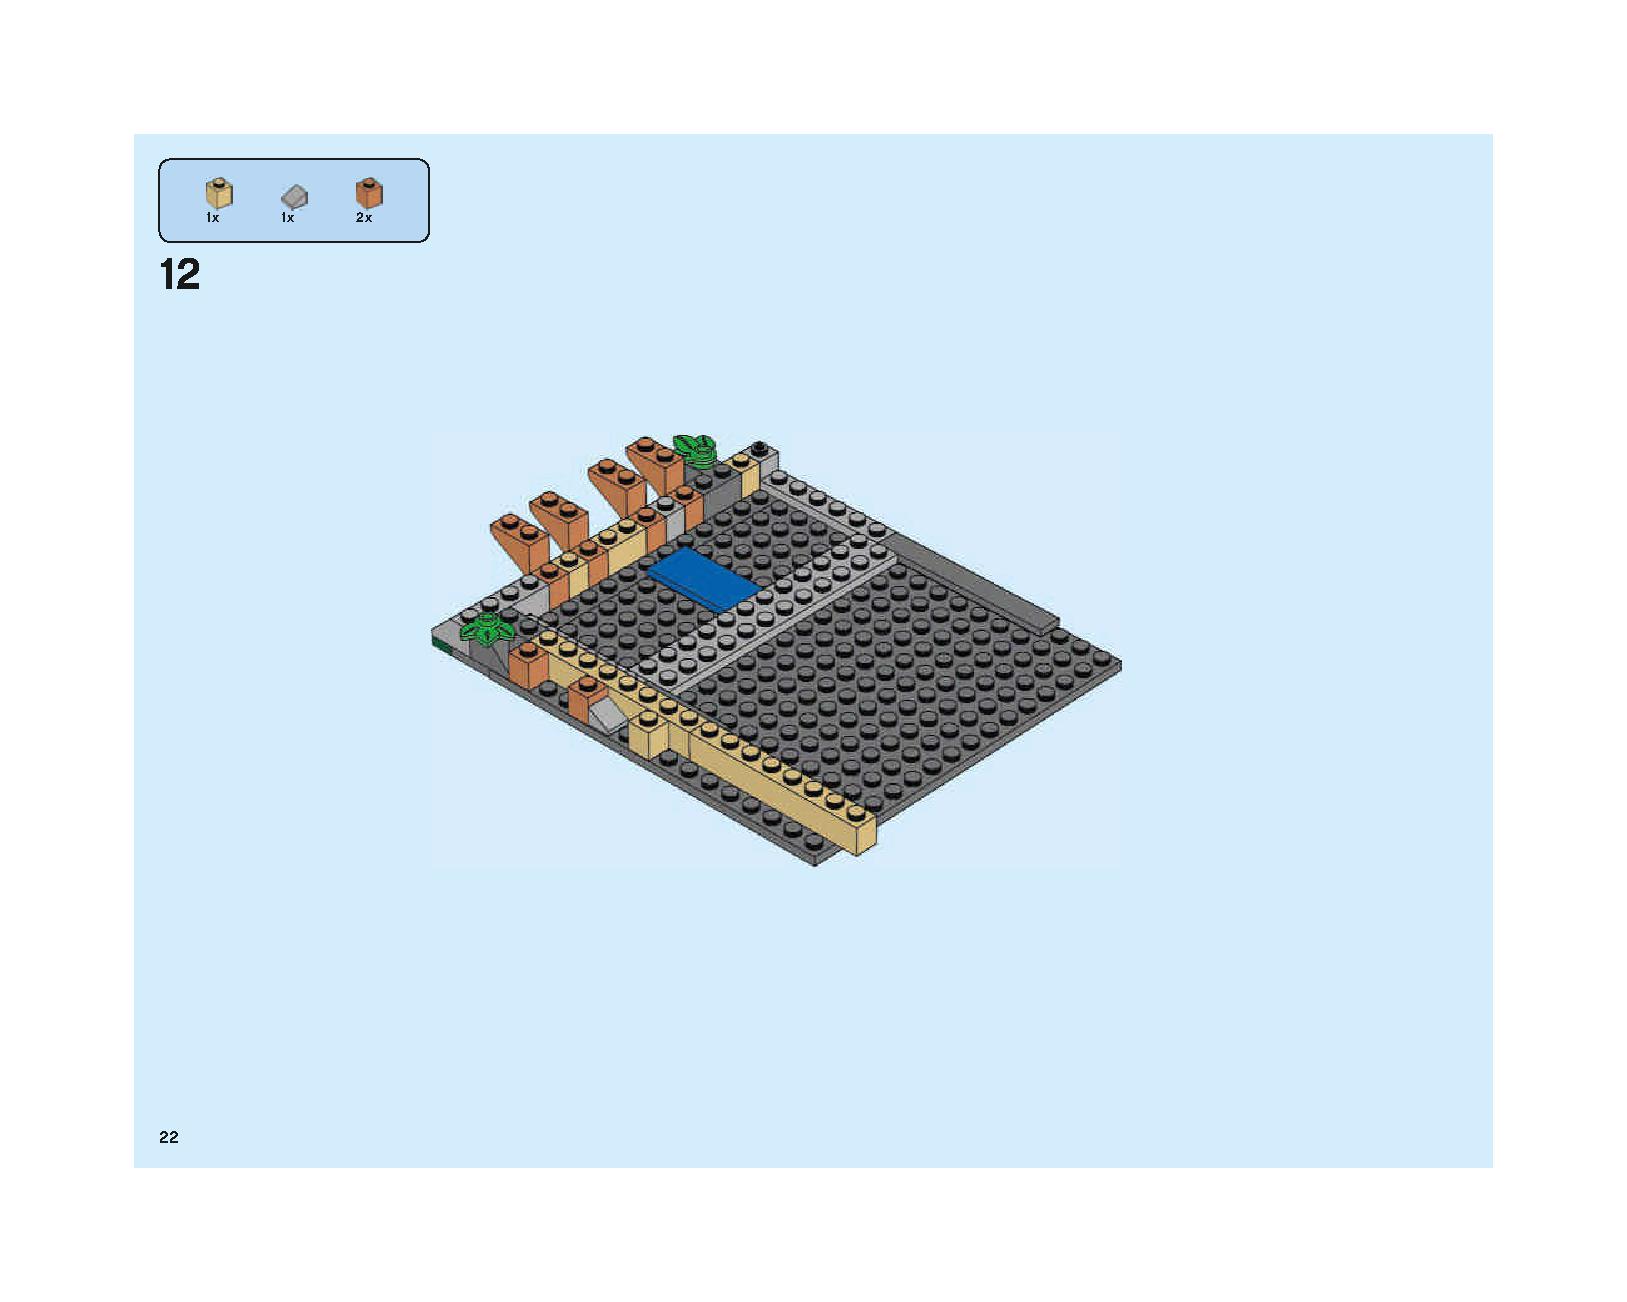 ホグワーツの大広間 75954 レゴの商品情報 レゴの説明書・組立方法 22 page